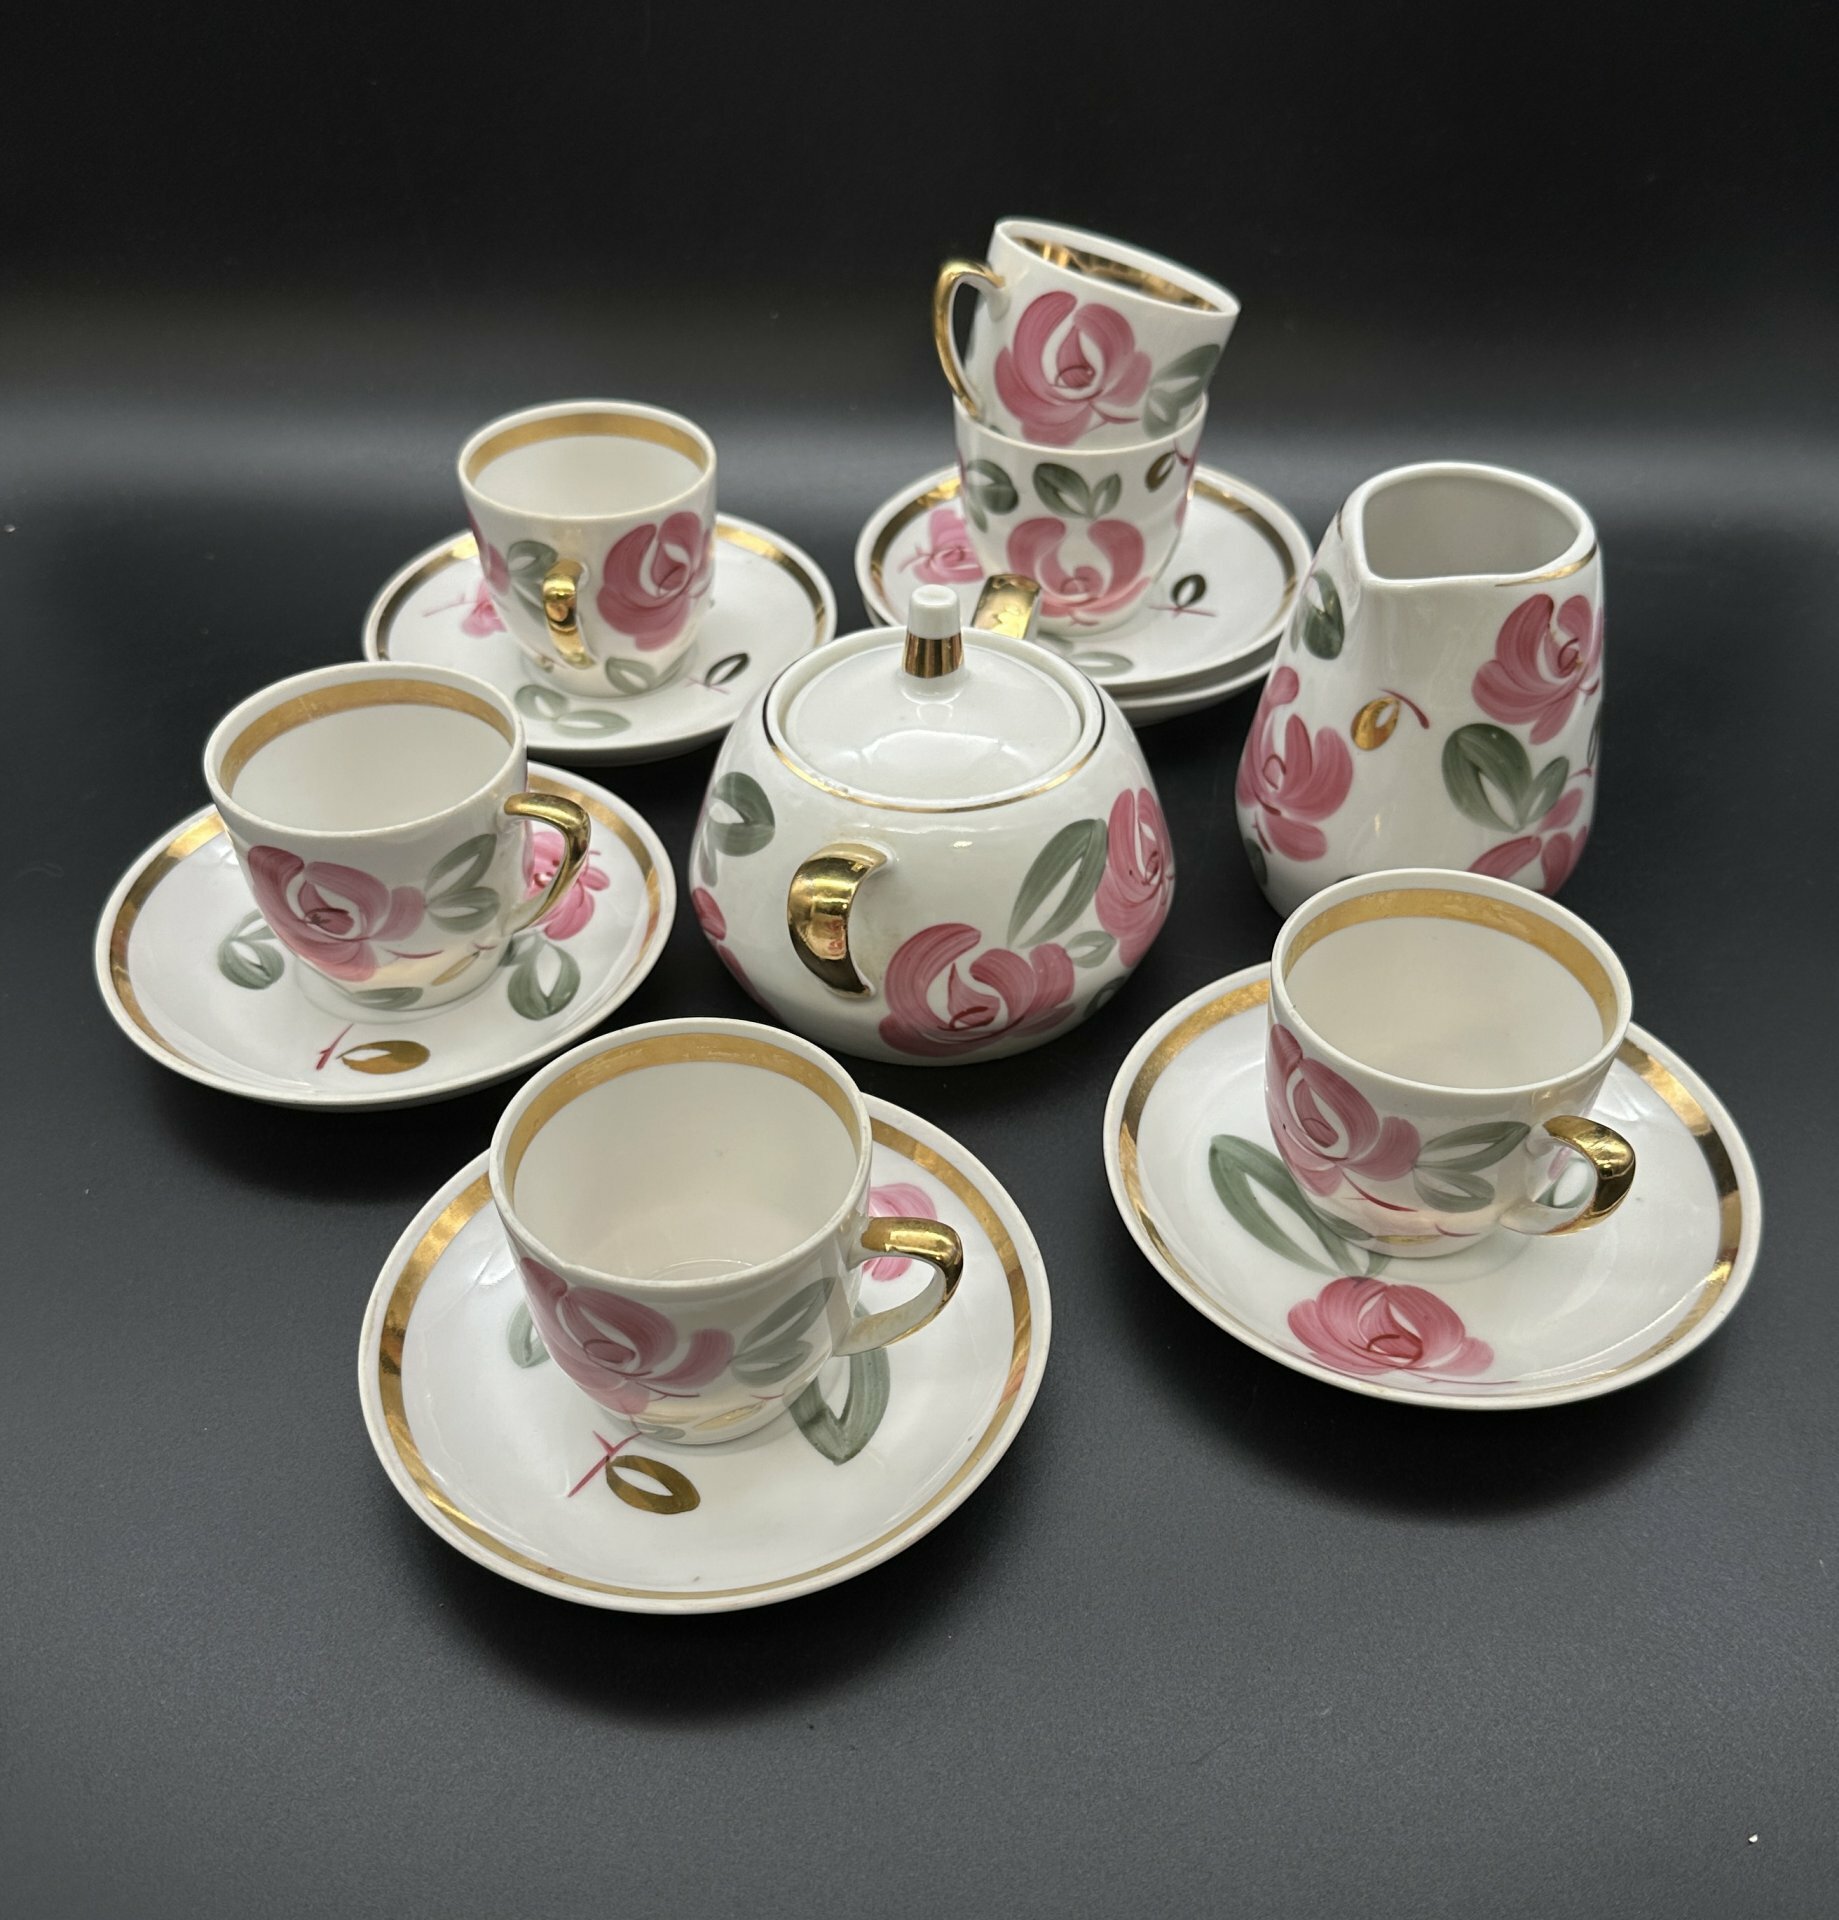 Набор чайно-кофейный с цветочным орнаментом (14 предметов), фарфор, роспись